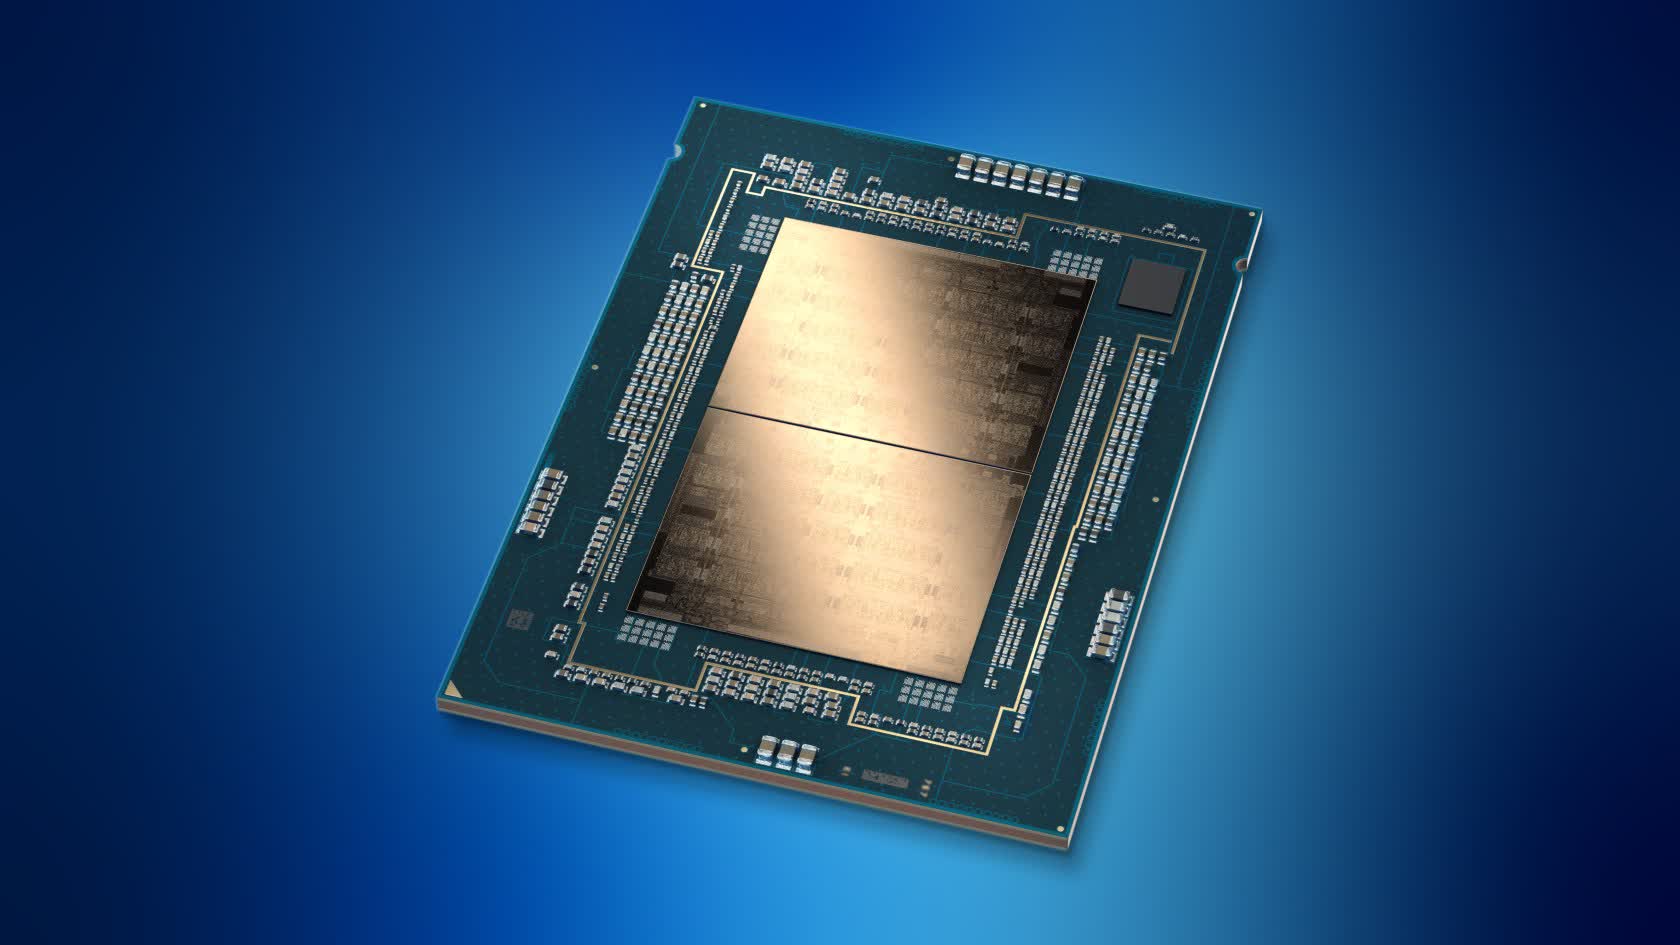 Intel parece haber acertado en las pruebas comparativas de sus procesadores Xeon